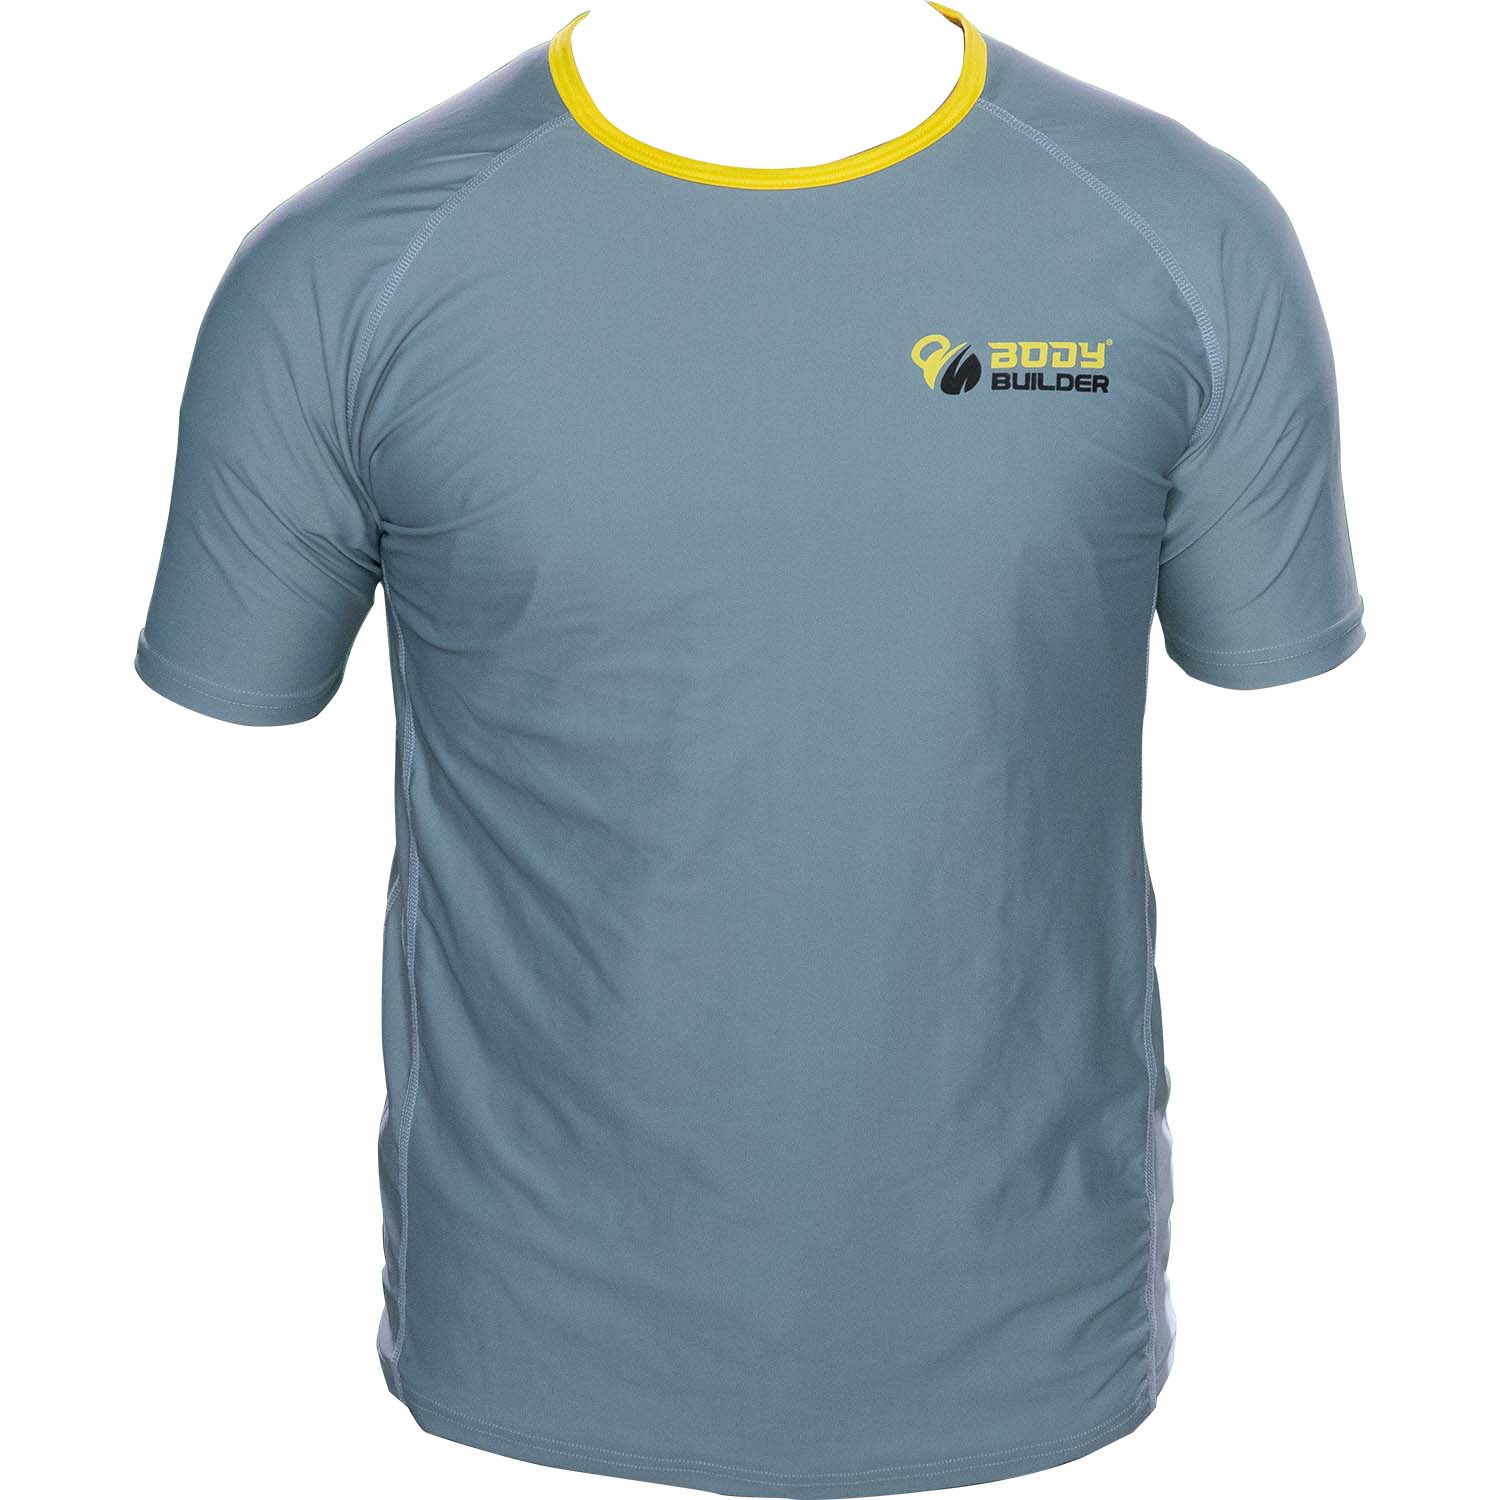 Body Builder T-Shirt Premium Grey-Yellow S